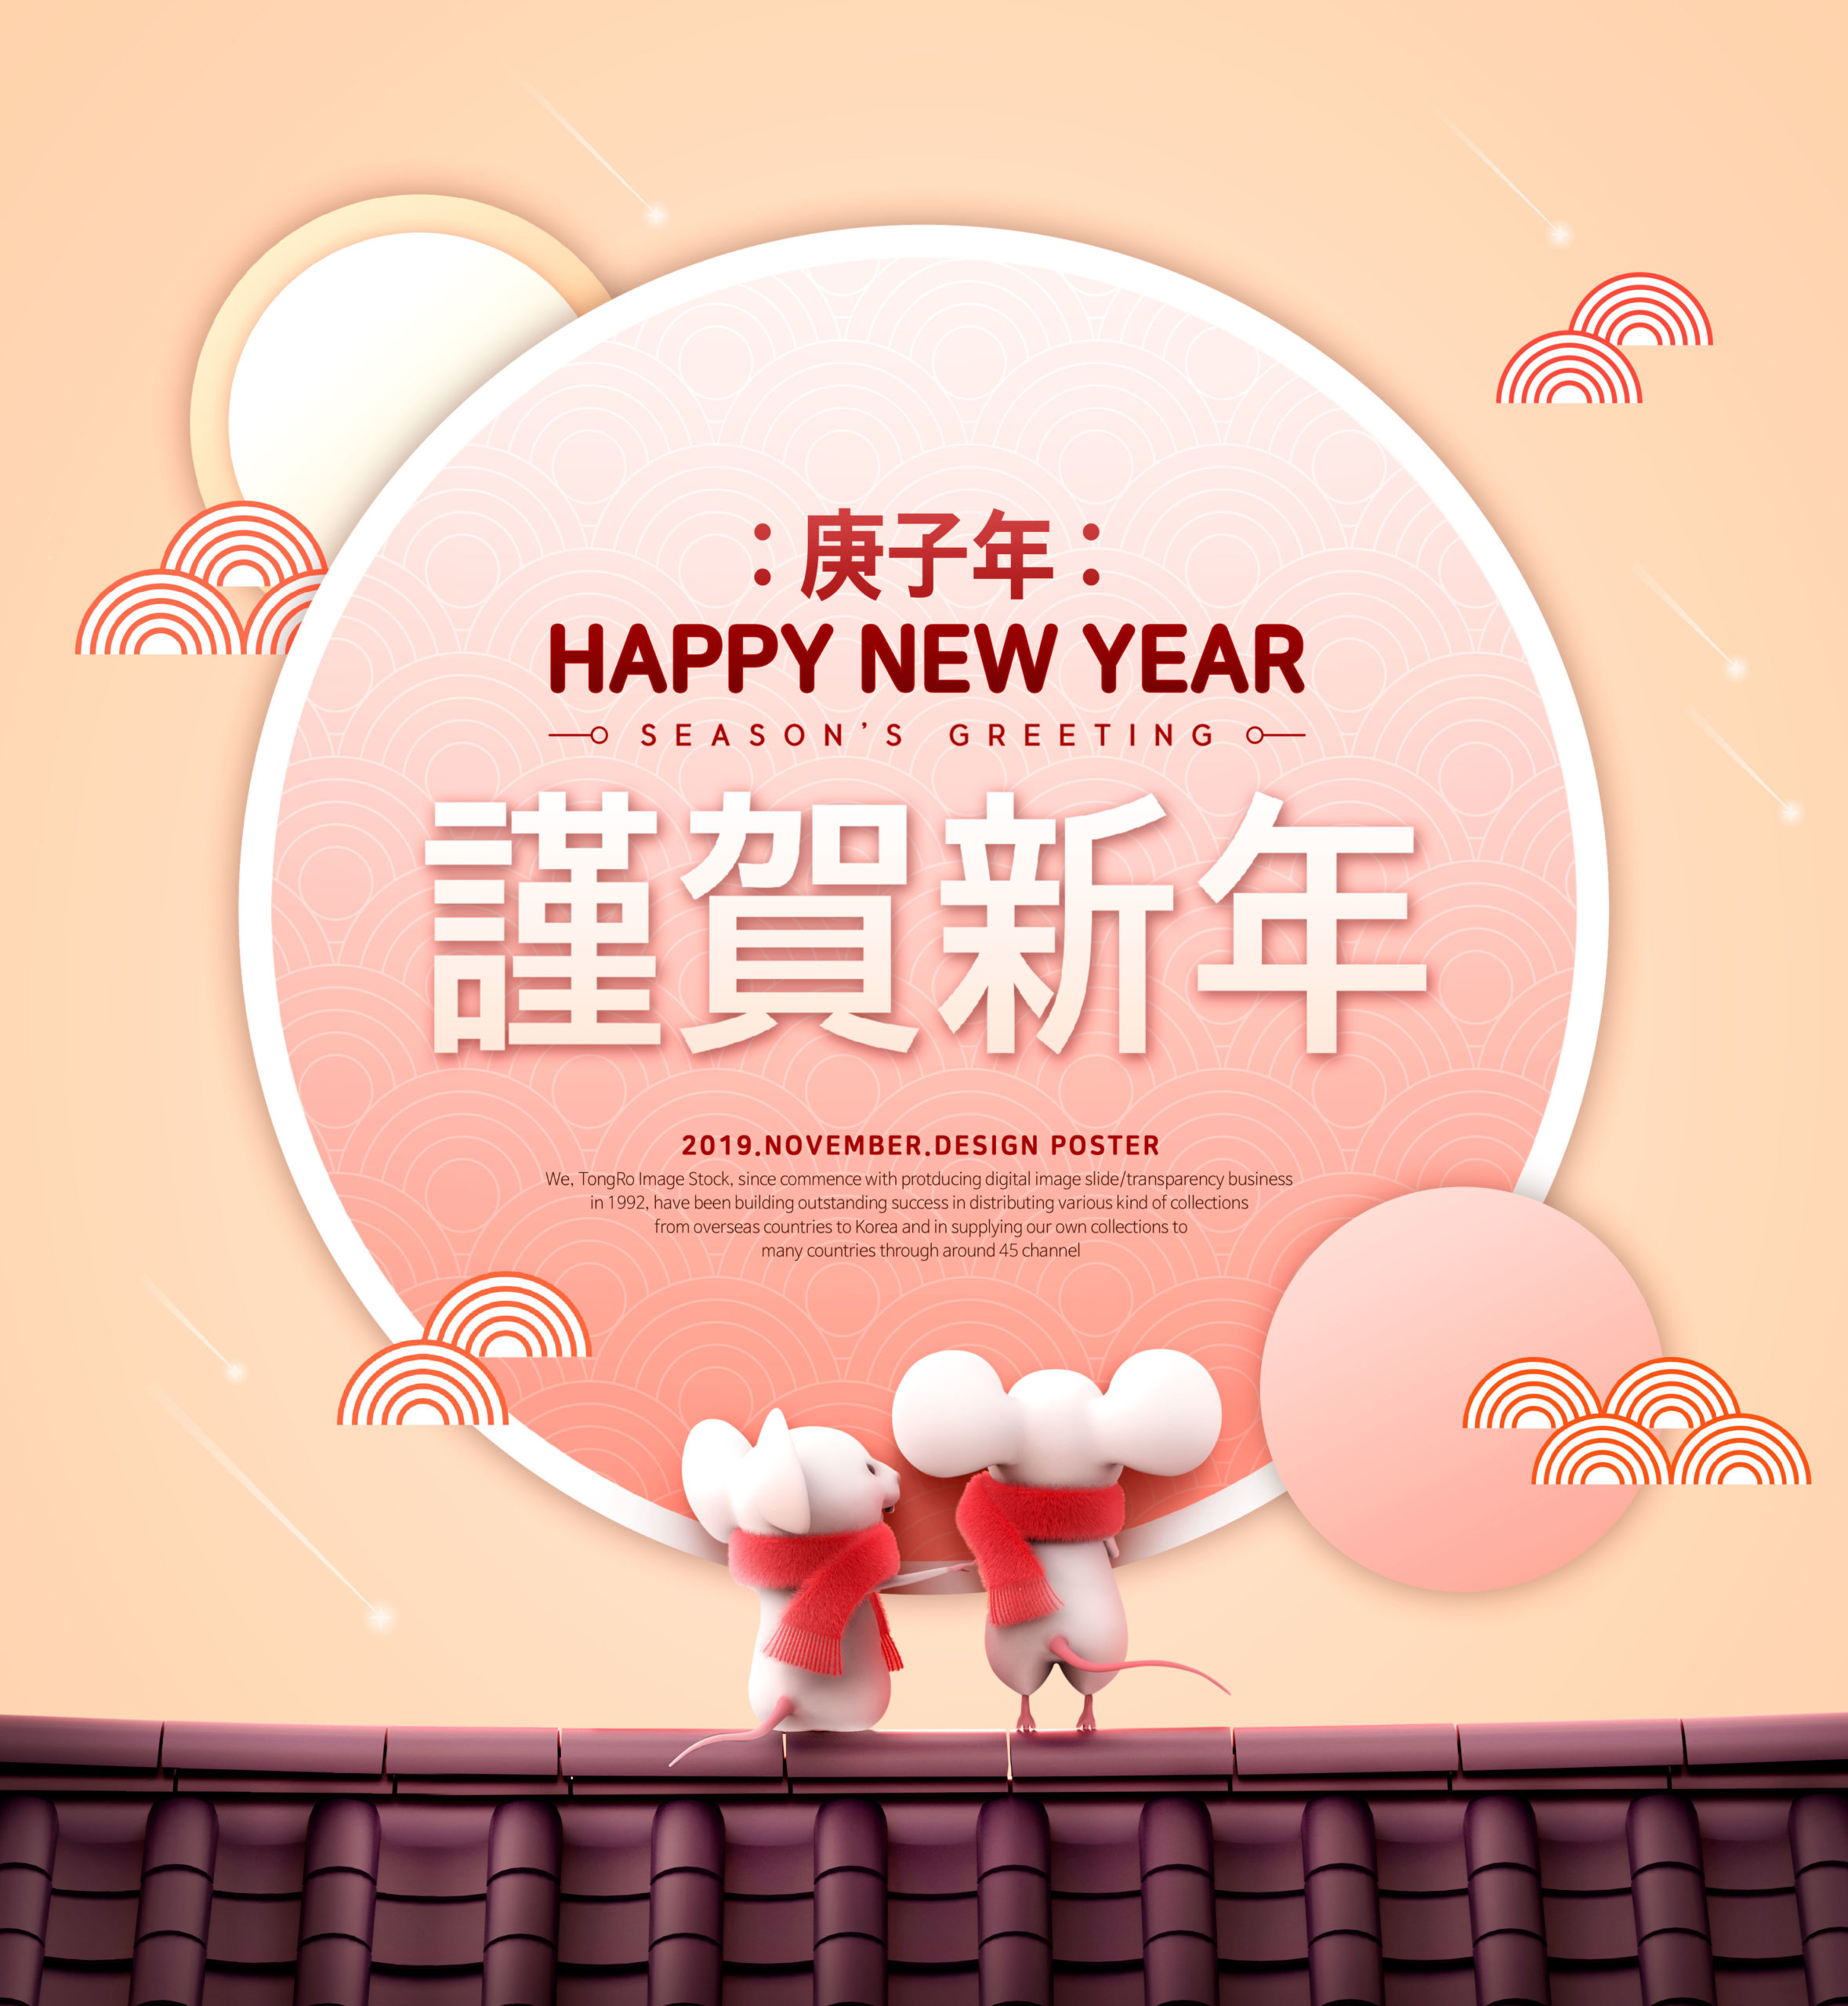 可爱小老鼠2020鼠年/庚子年/新年快乐主题海报模板[PSD]插图